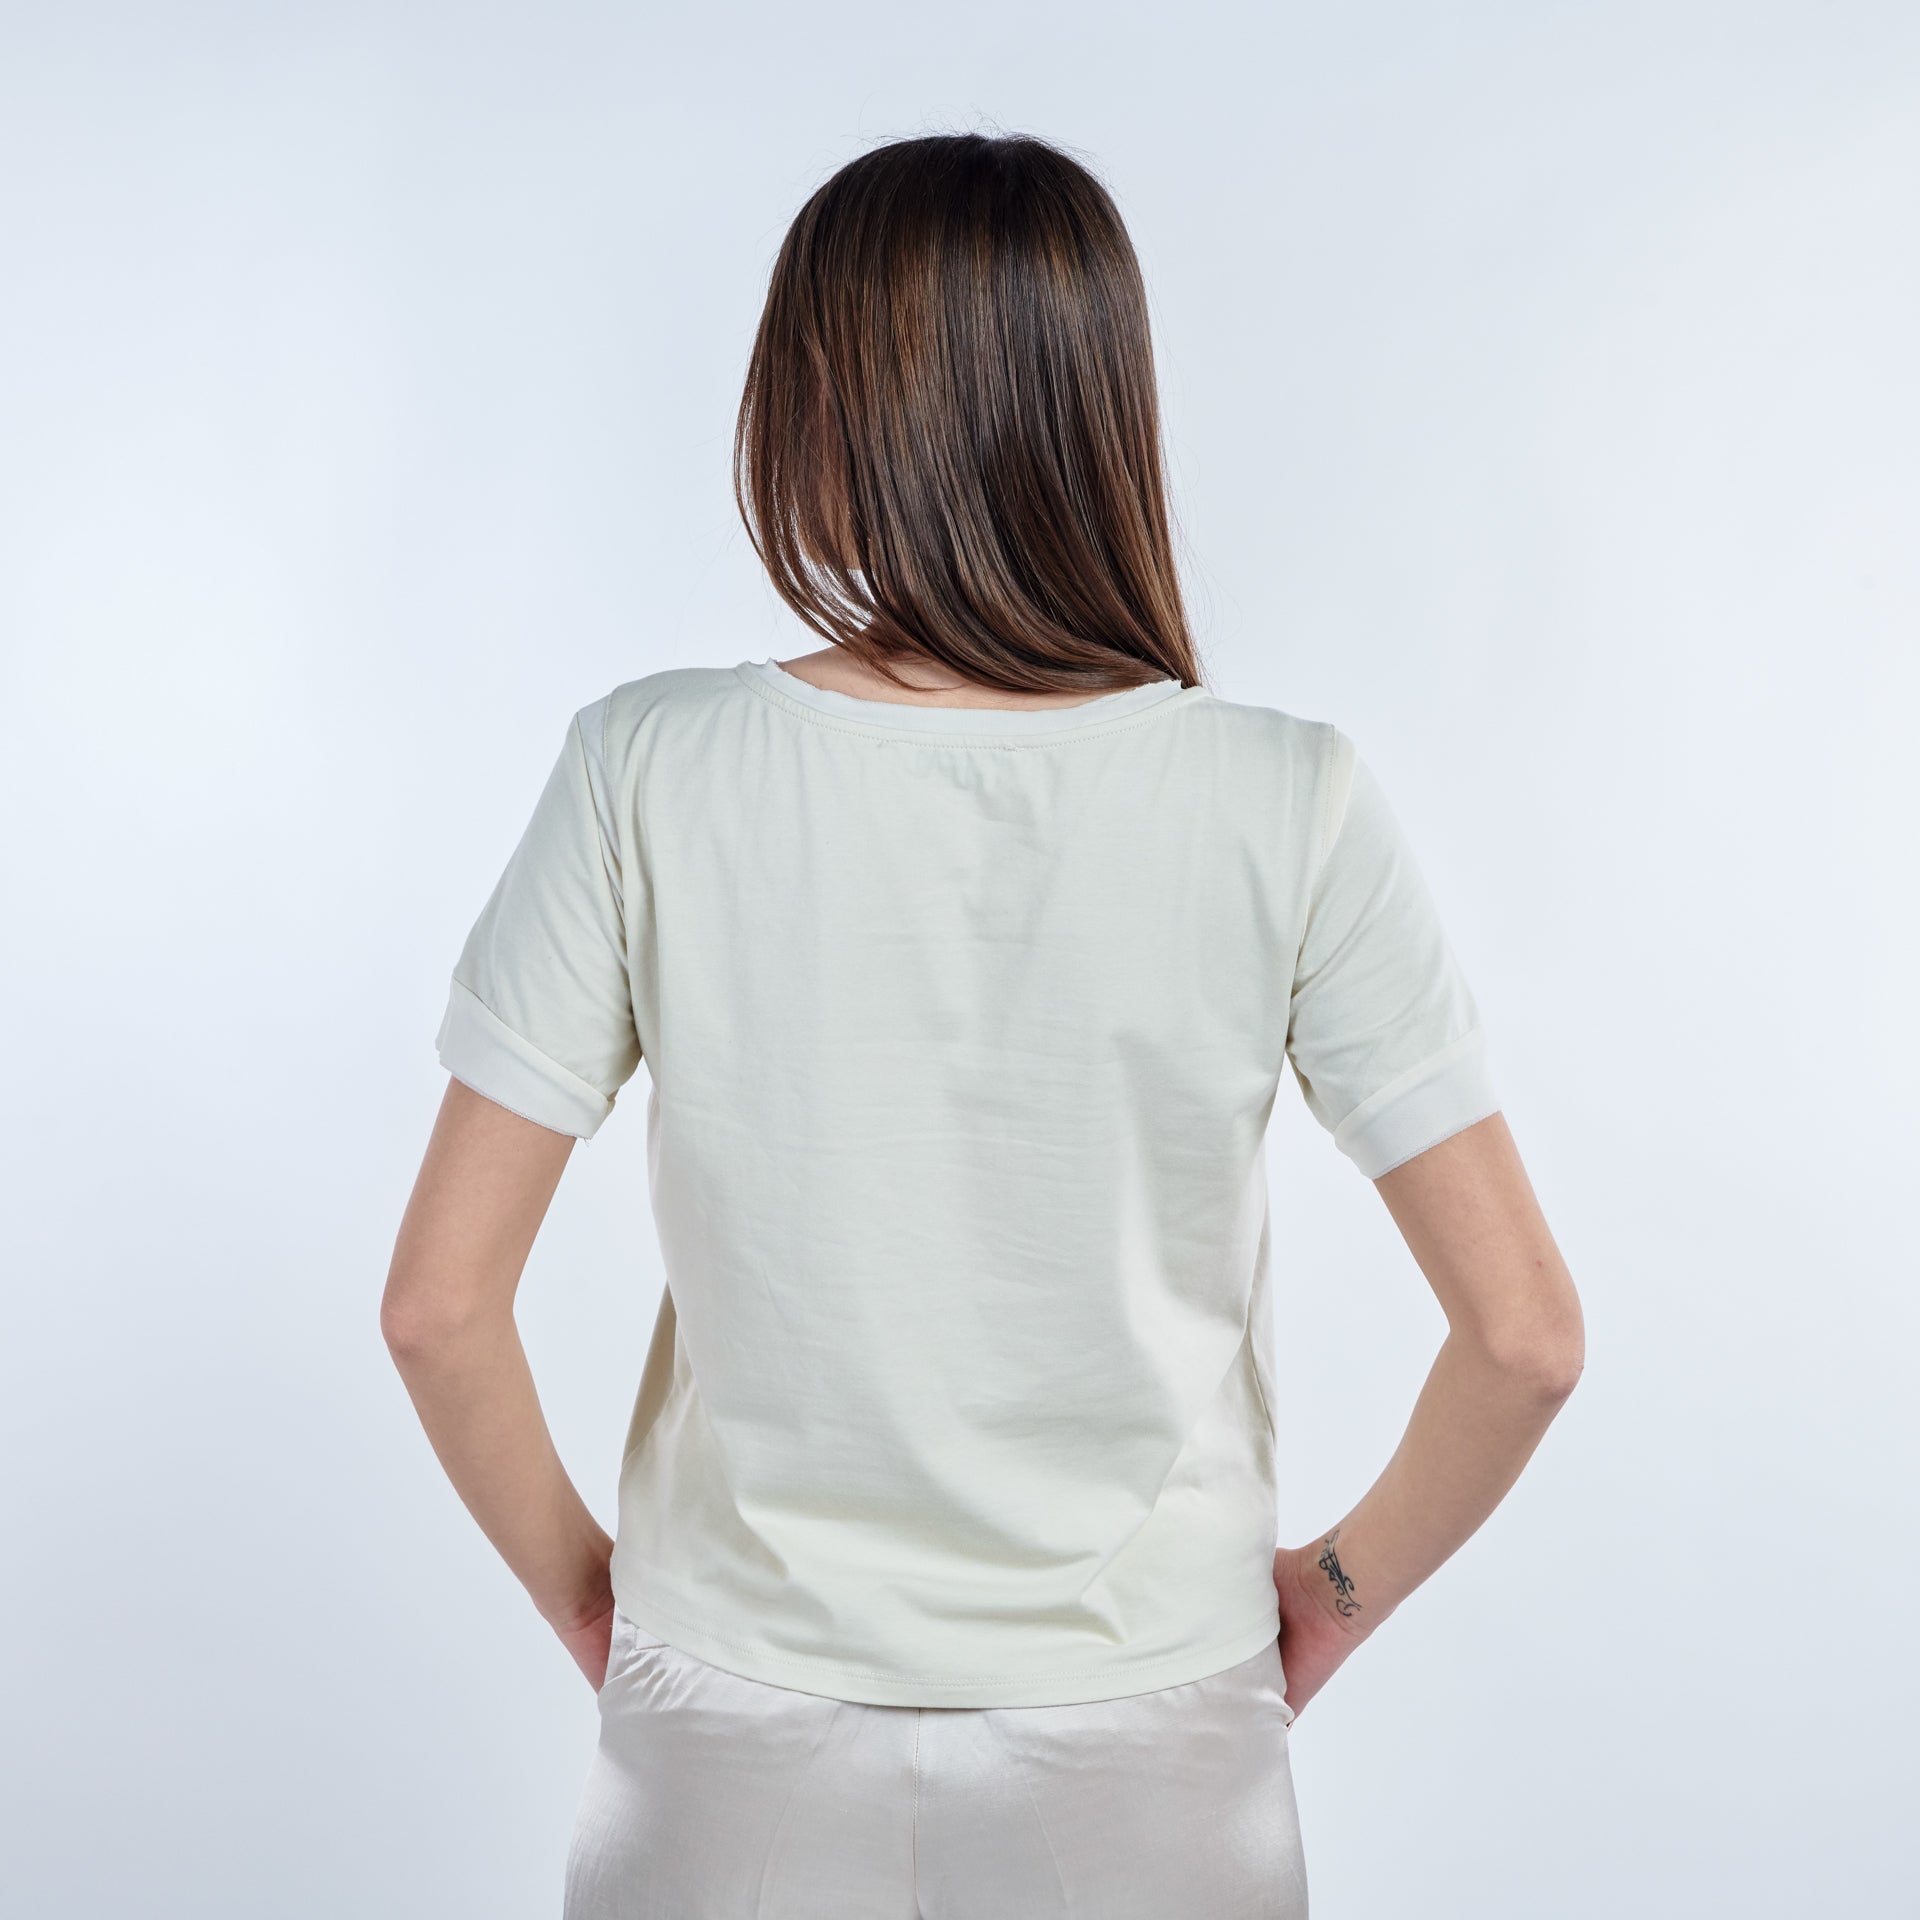 Camiseta de algodón manga corta con detalles de tul